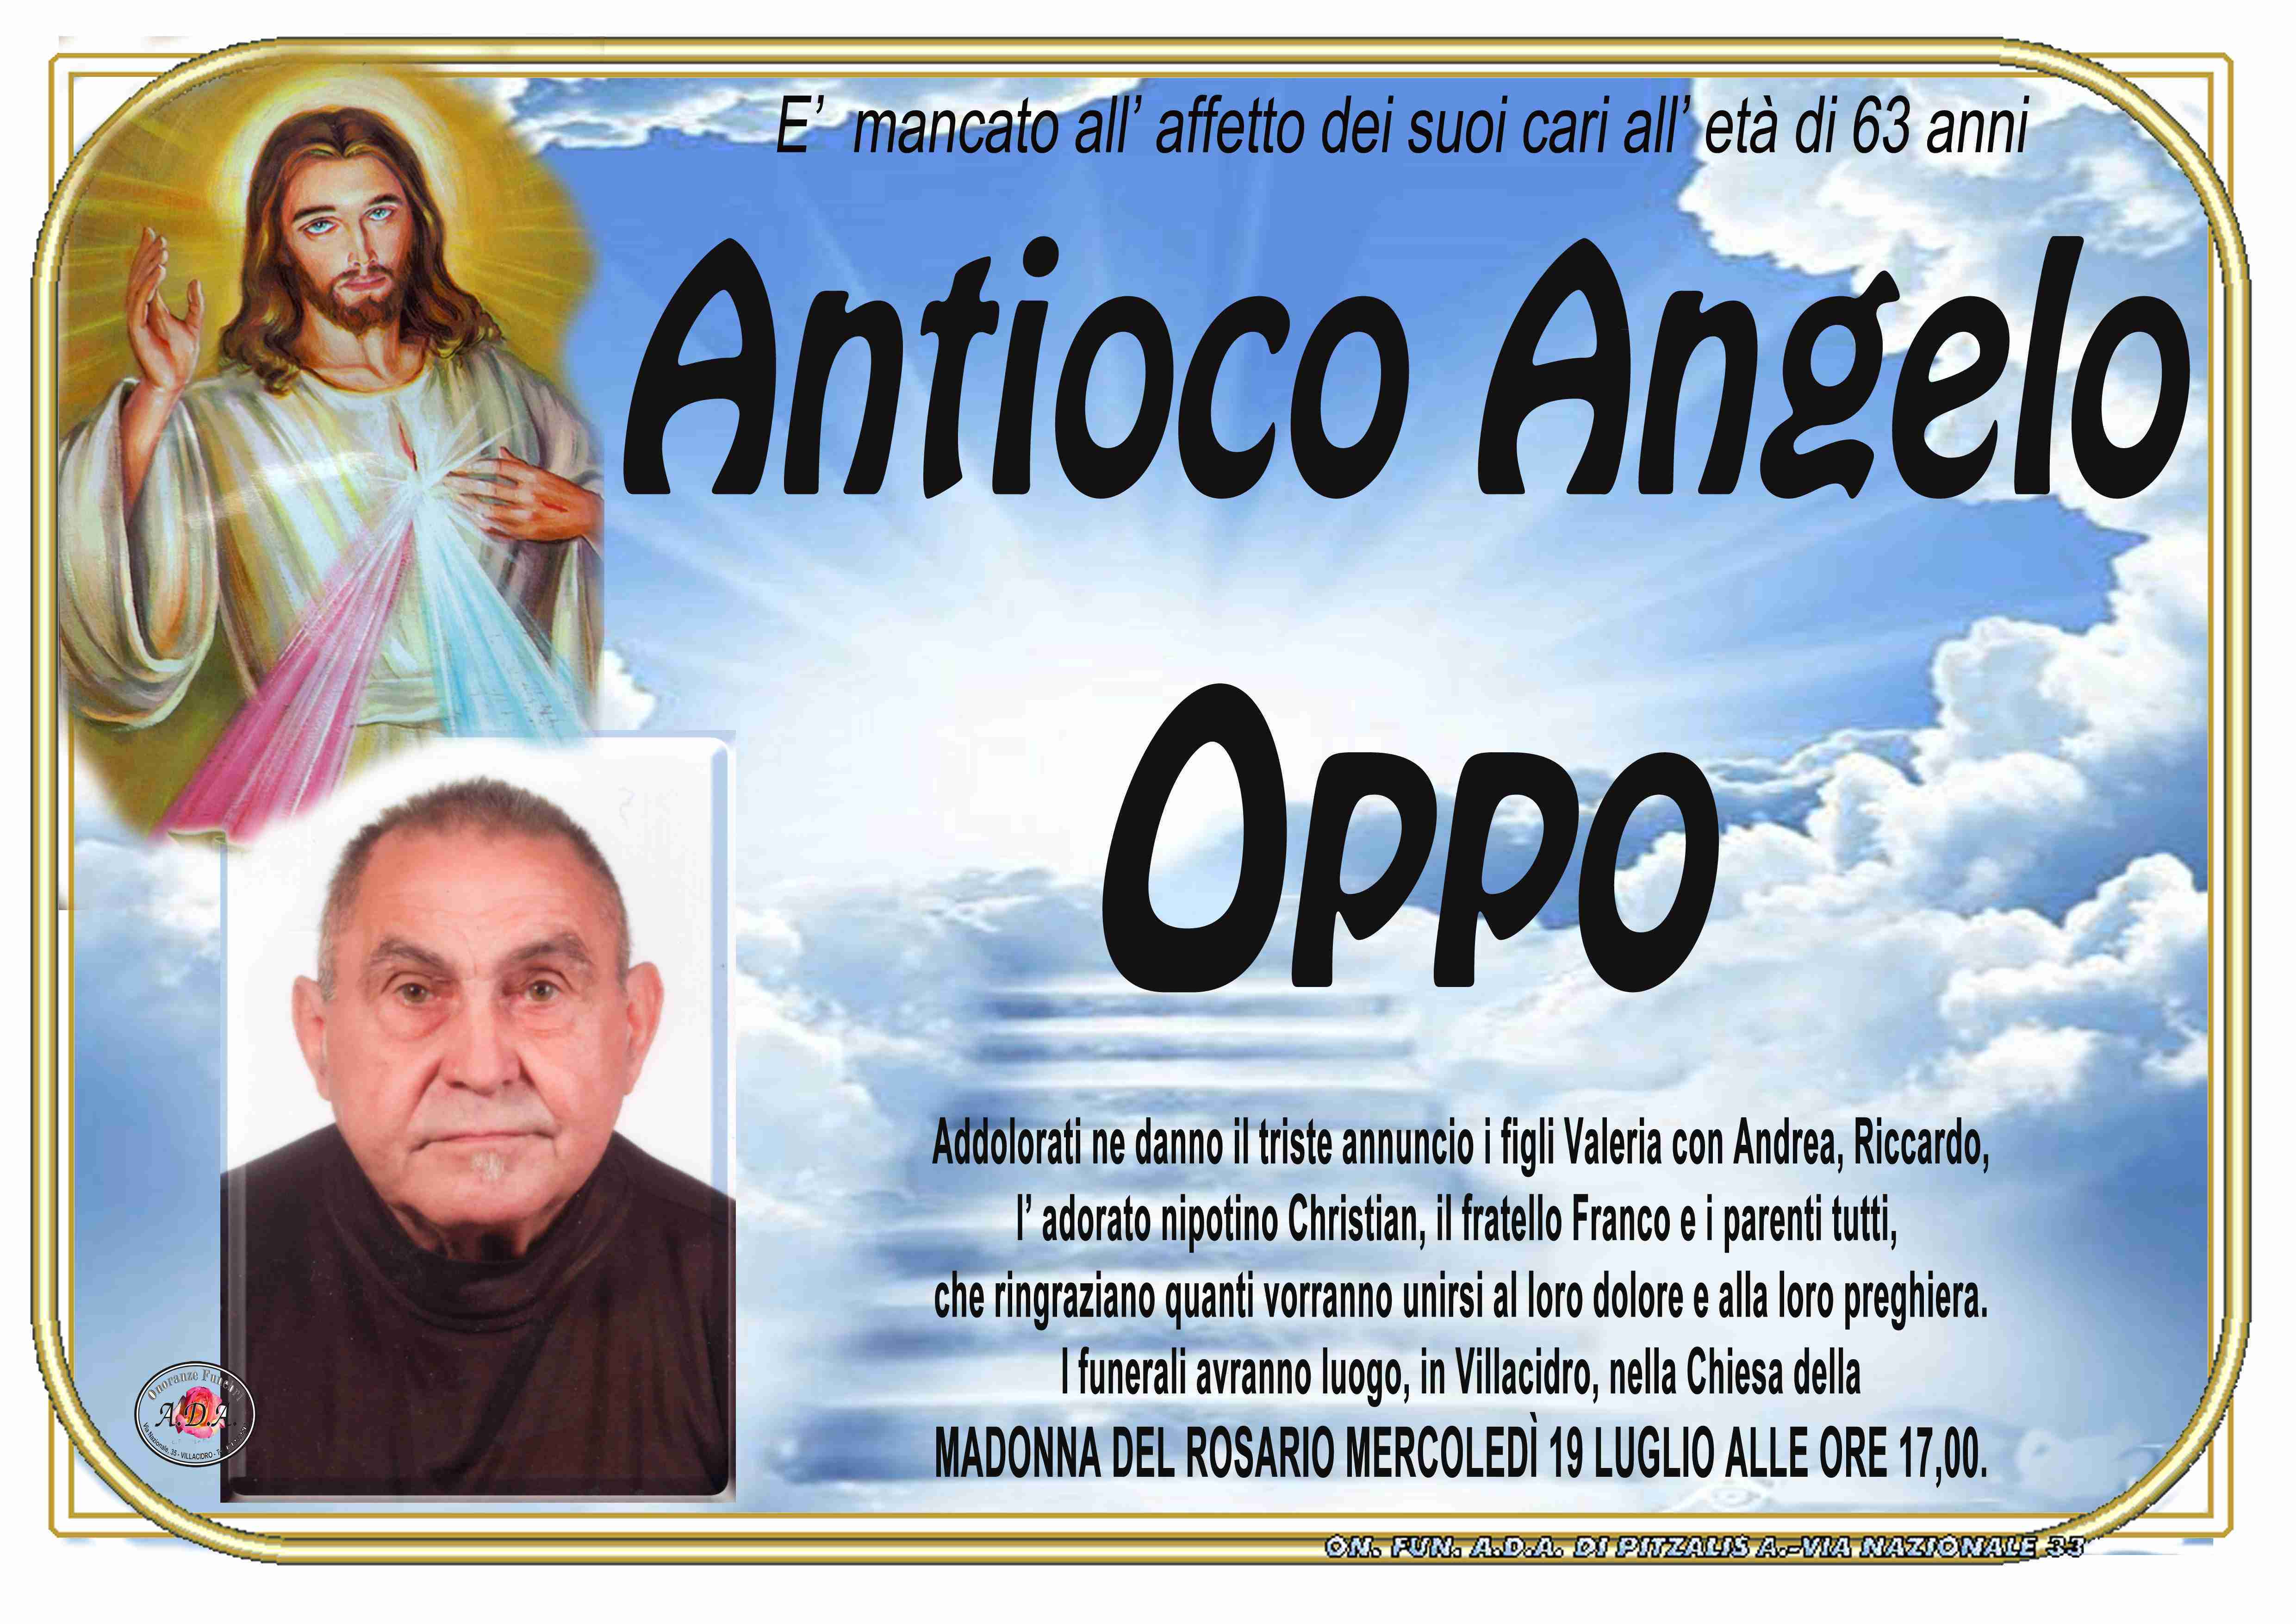 Antioco Angelo Oppo